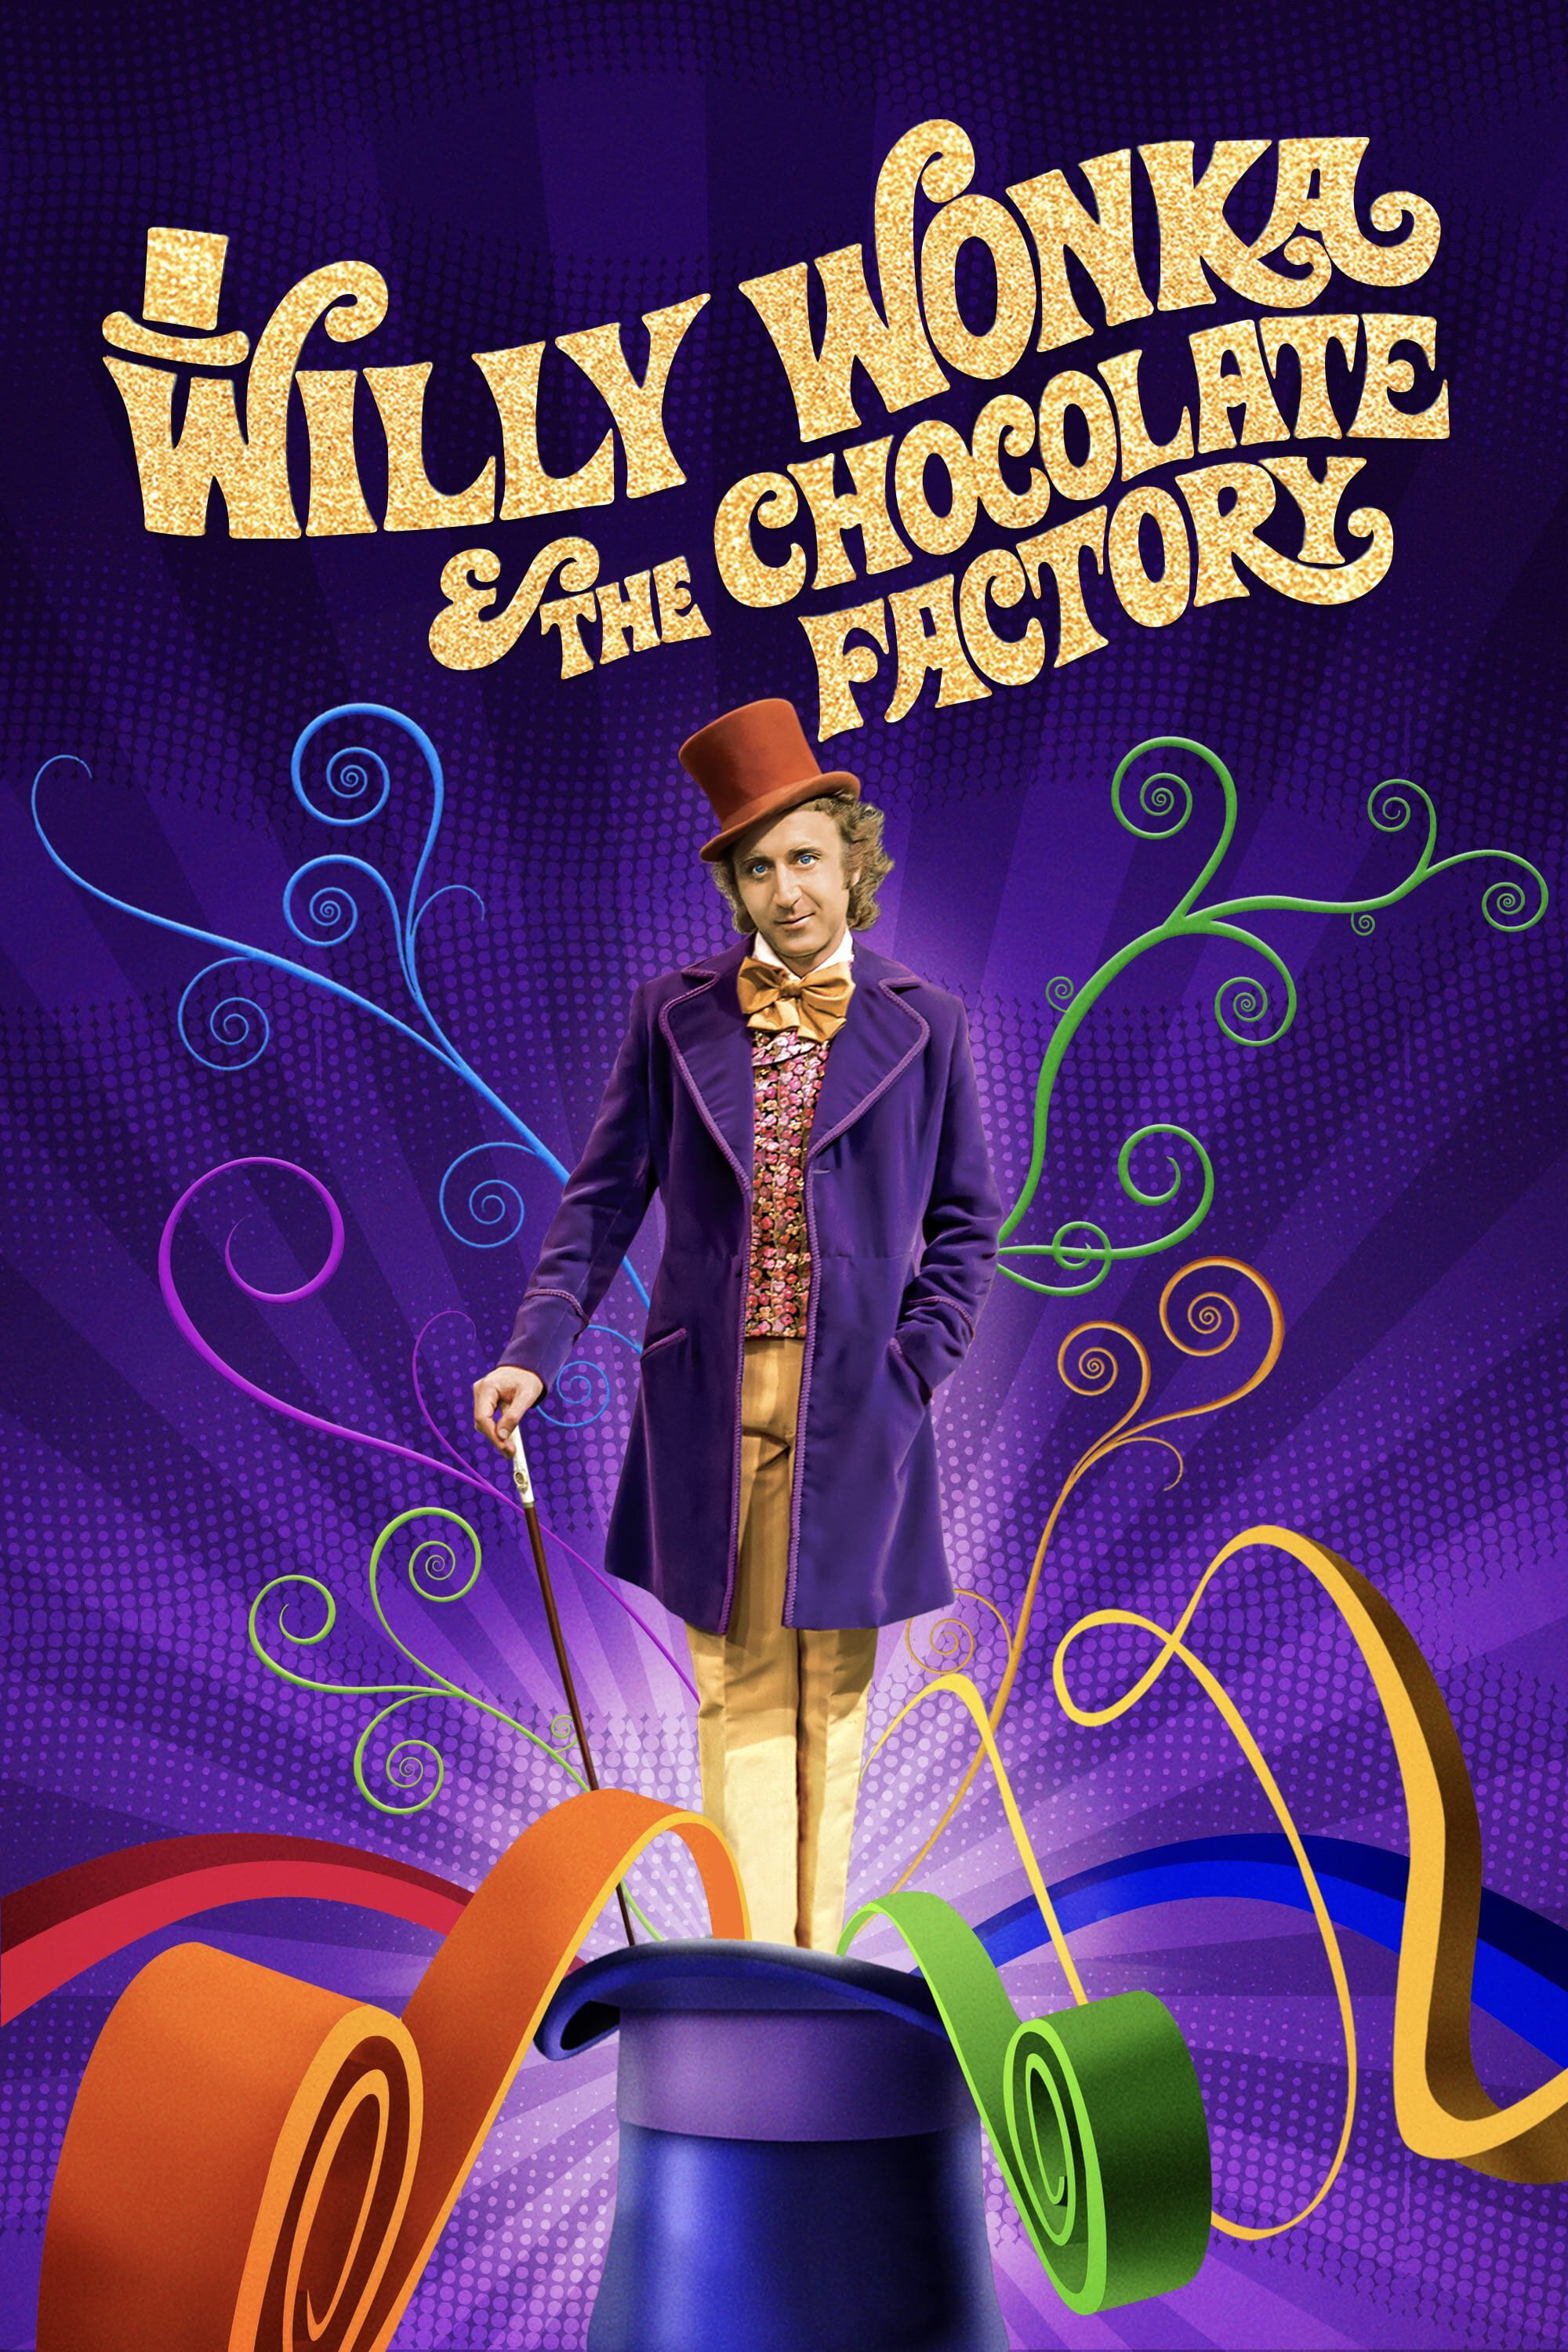 Charlie und die Schokoladenfabrik